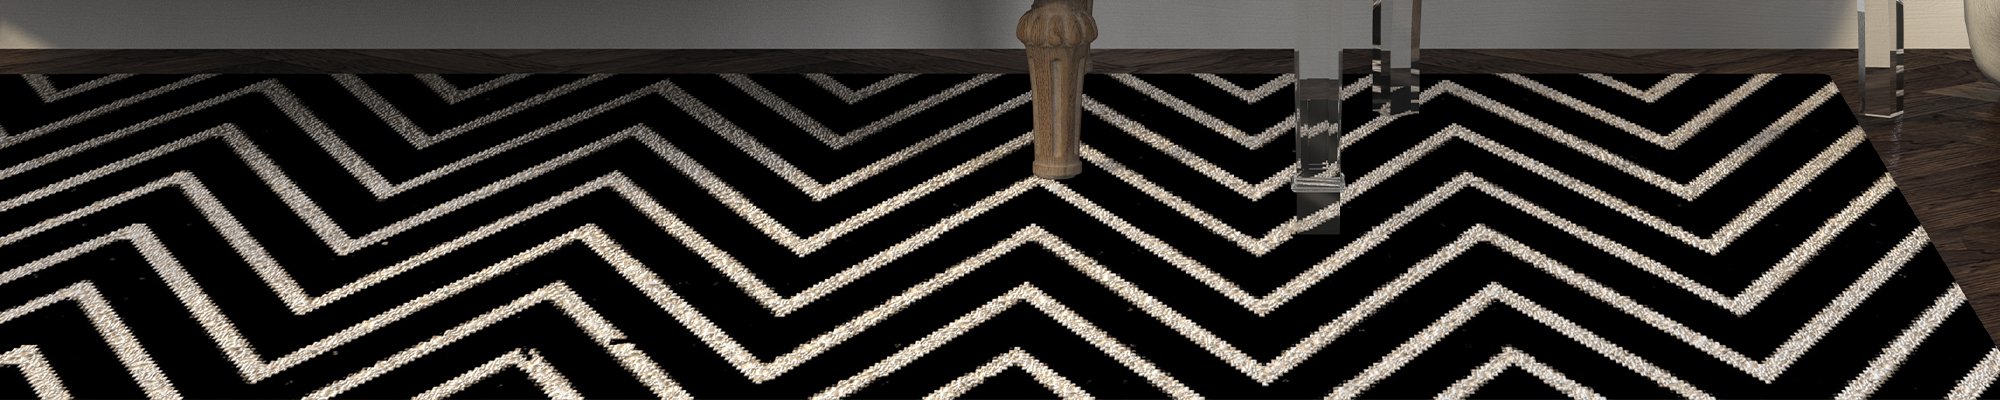 black patterned area rug from Pioneer Floor Coverings & Design in Cedar City, UT